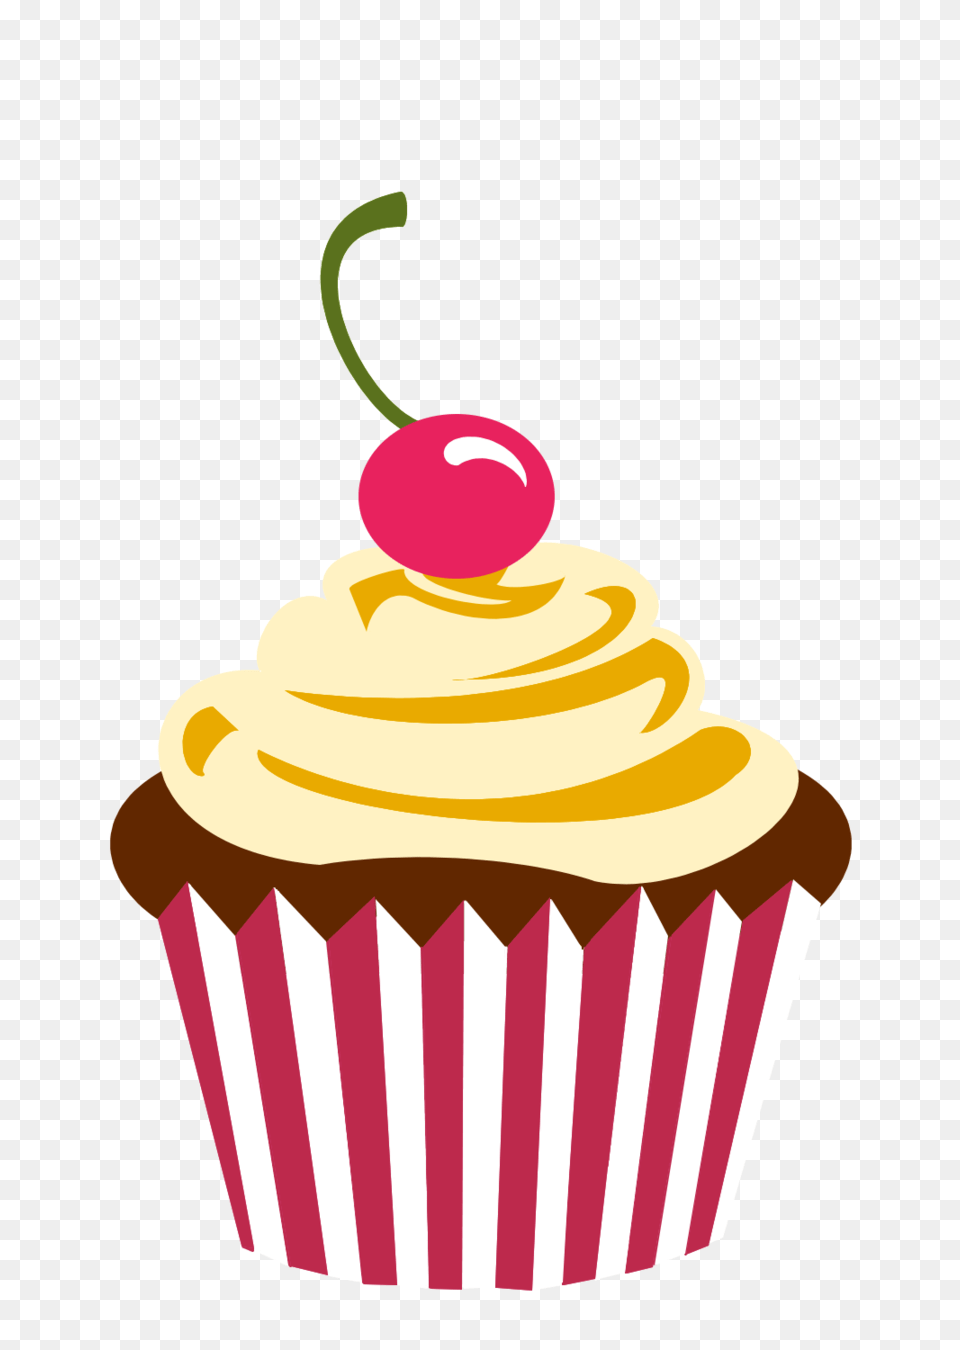 Party Cupcake Logo Branding, Cake, Food, Dessert, Cream Png Image